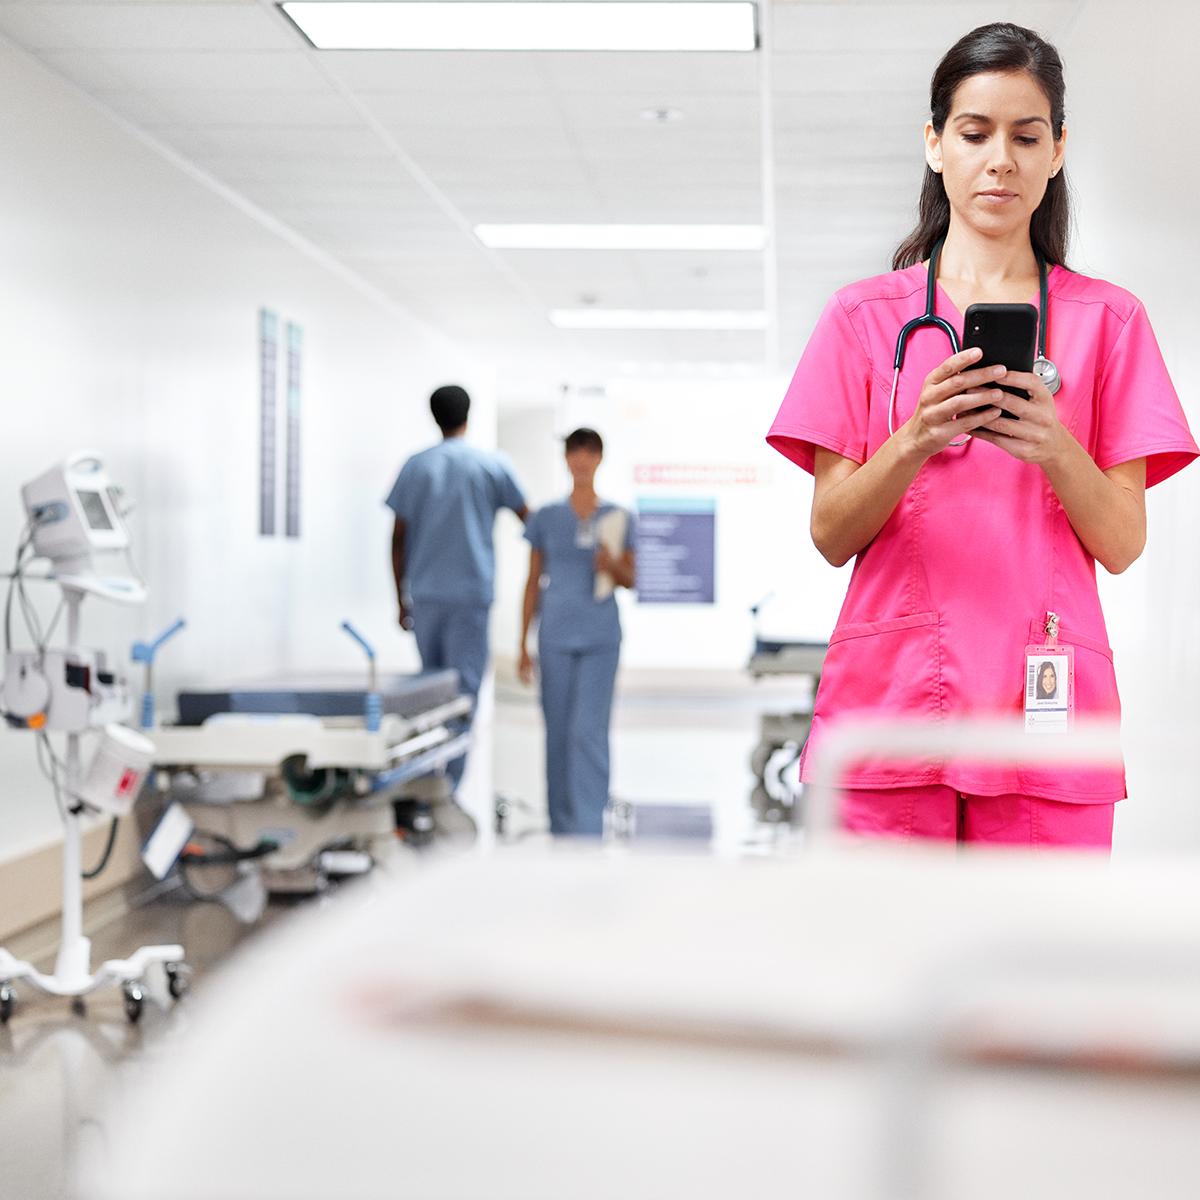 Une clinicienne vérifie son téléphone, debout dans un couloir d'hôpital. Elle porte une blouse chirurgicale rose.